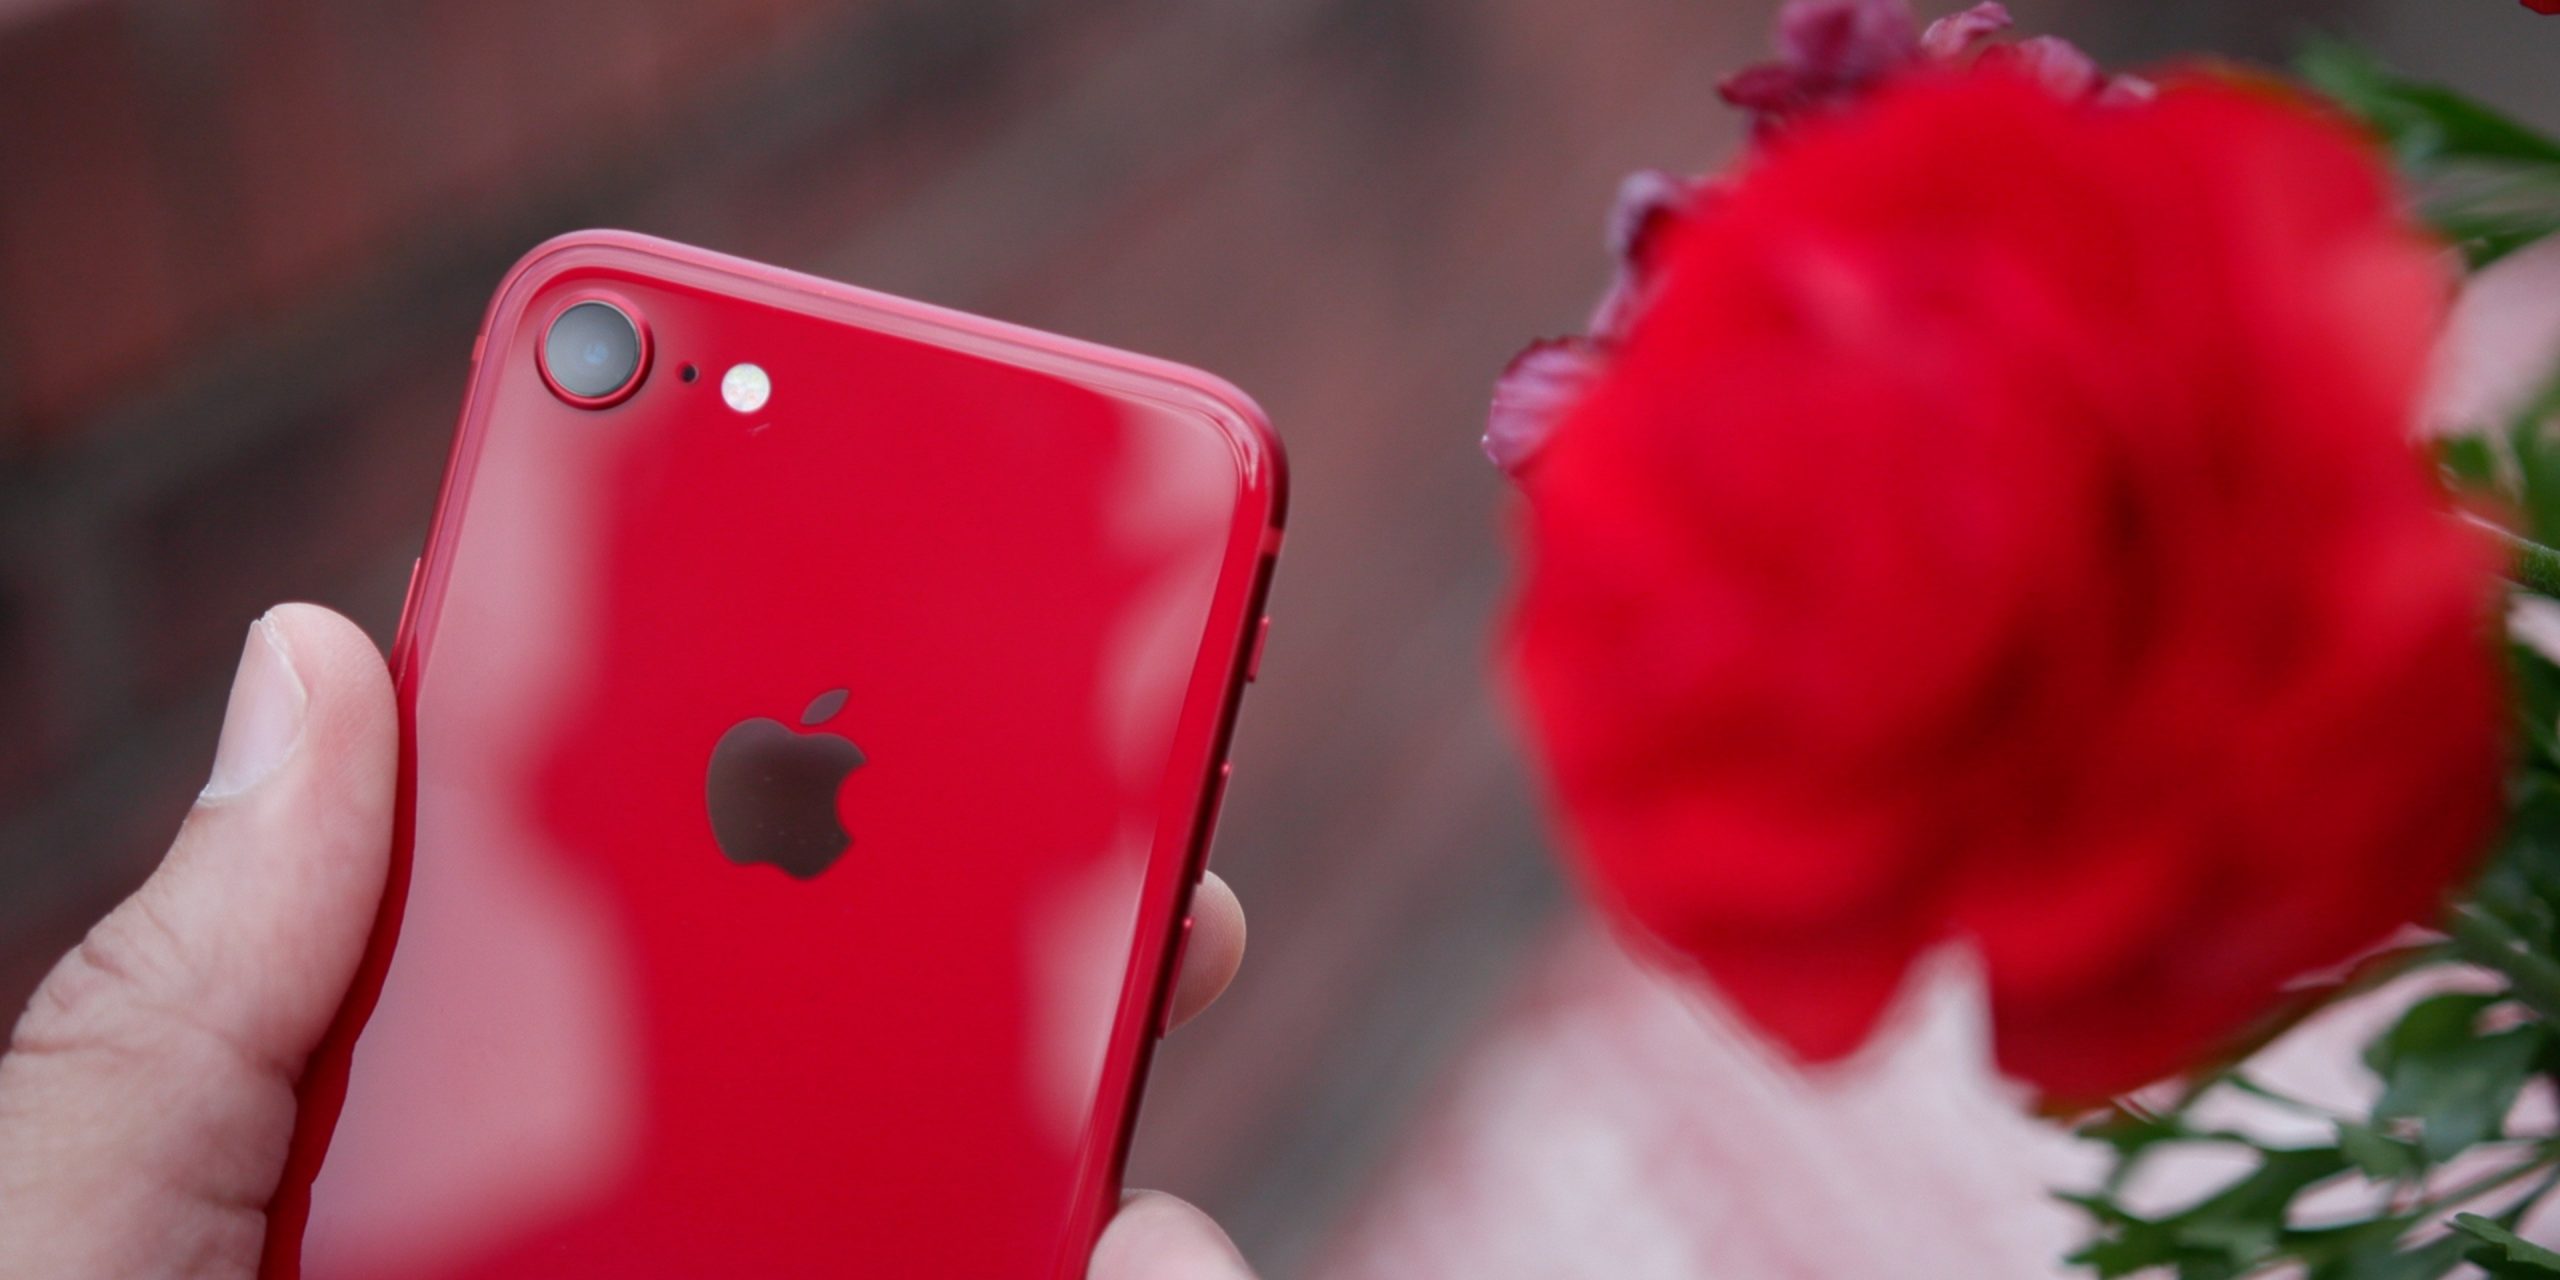 Ming-Chi Kuo: iPhone SE 2 thiết kế giống iPhone 8, giá khởi điểm 399 USD, tuỳ chọn bộ nhớ 64/128GB và có màu đỏ